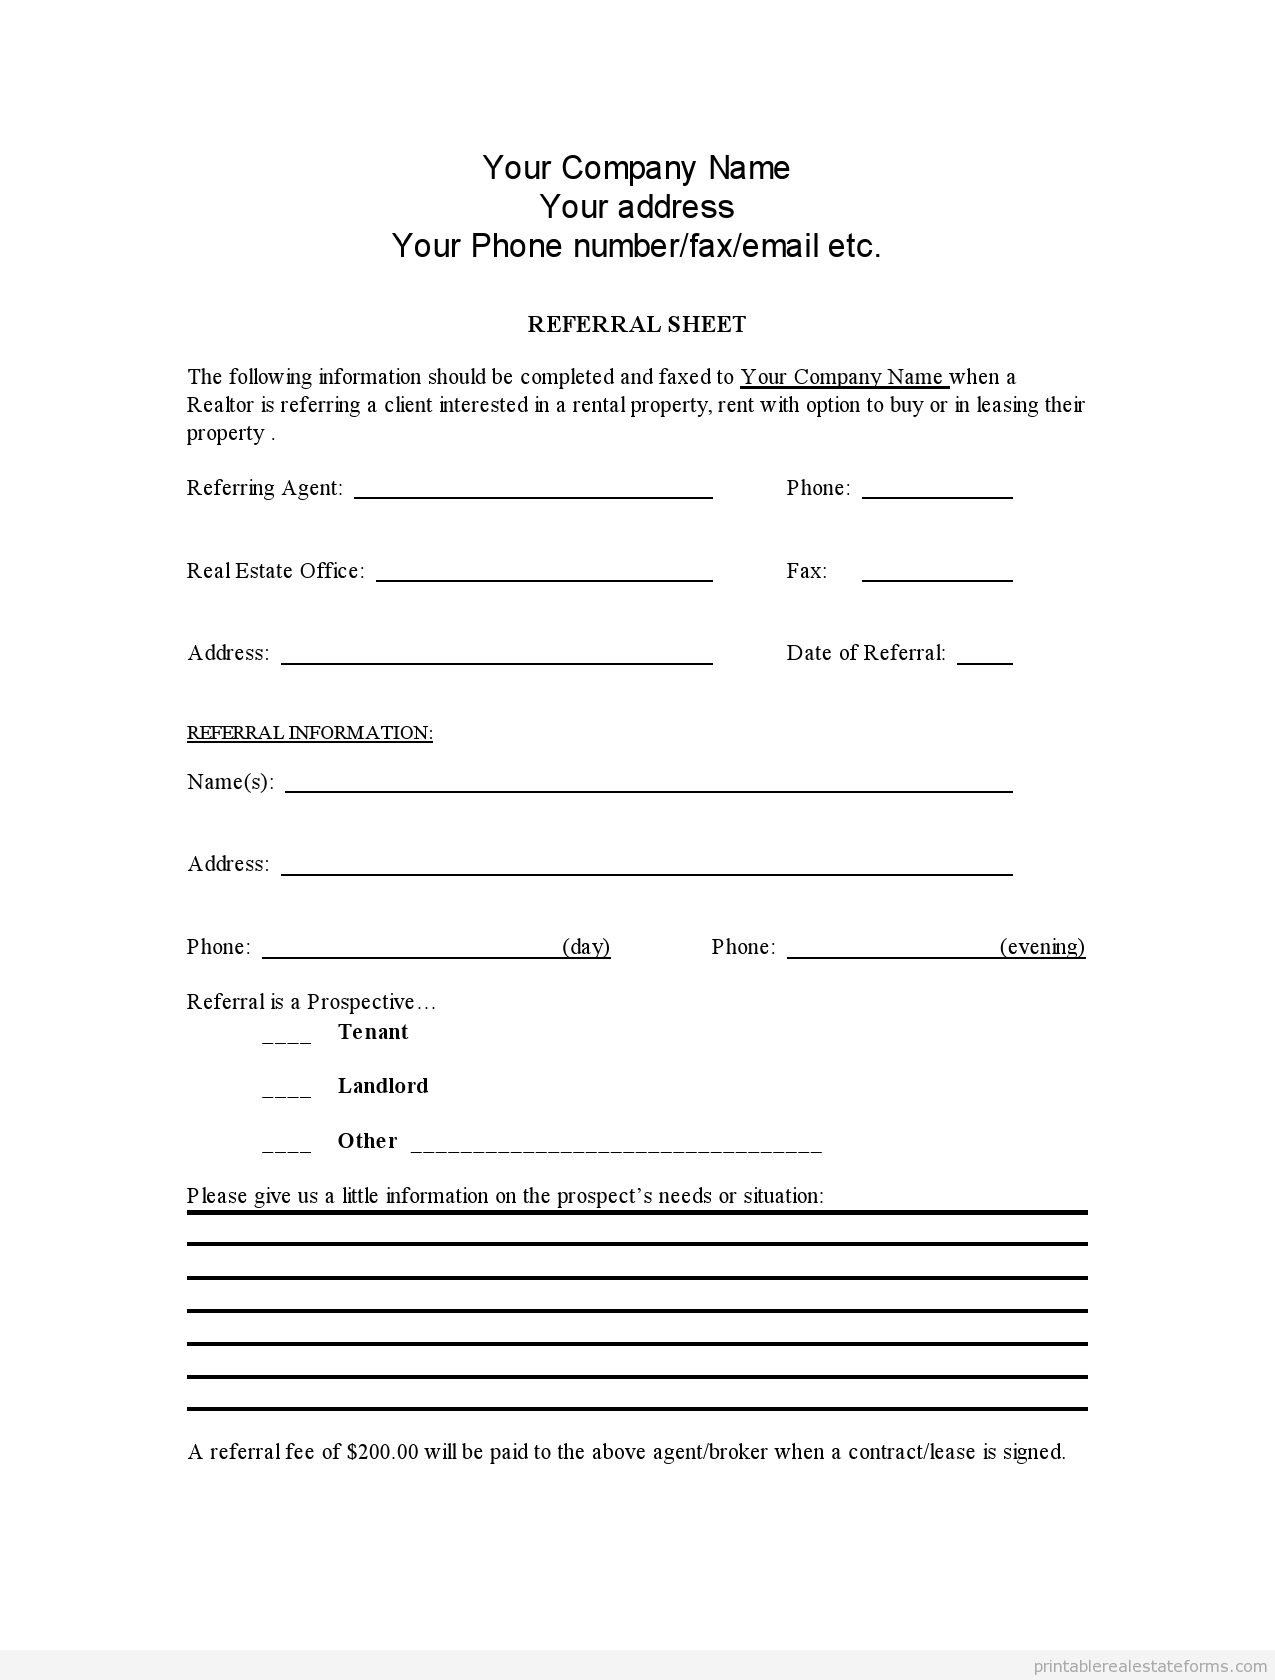 free-dental-referral-form-template-123formbuilder